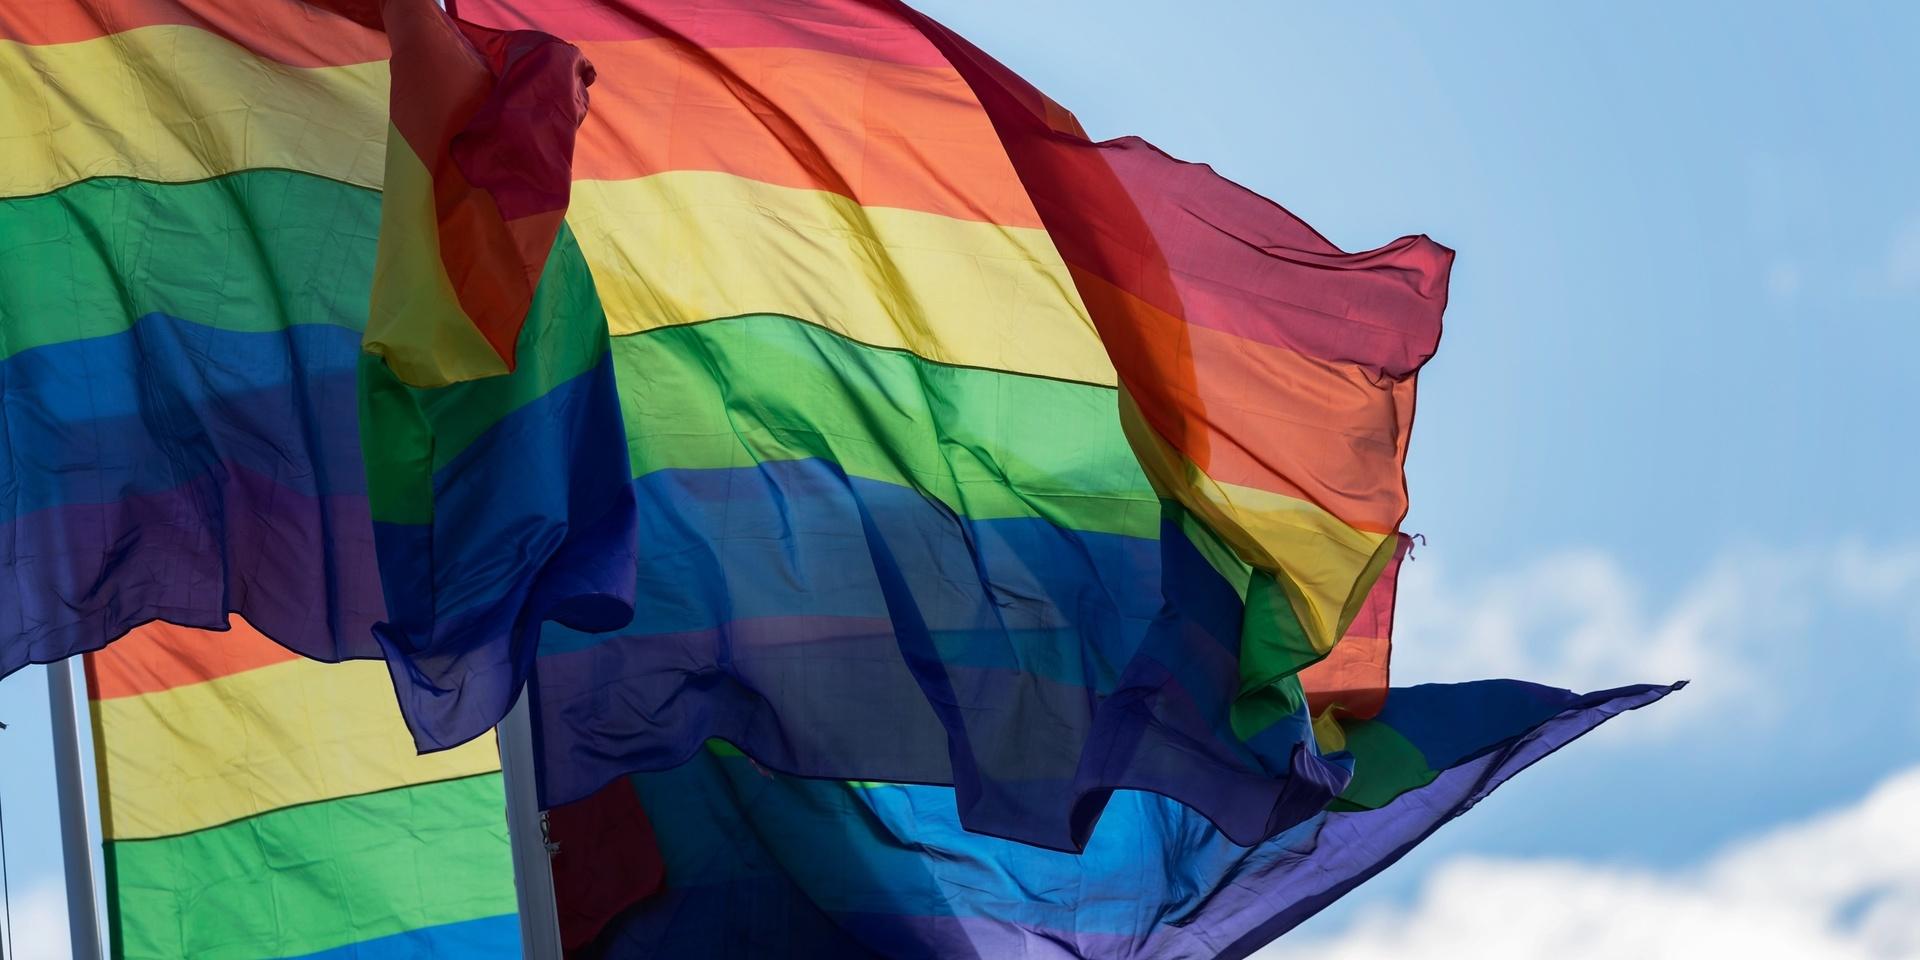 Regnbågsflaggor som står för Pride.